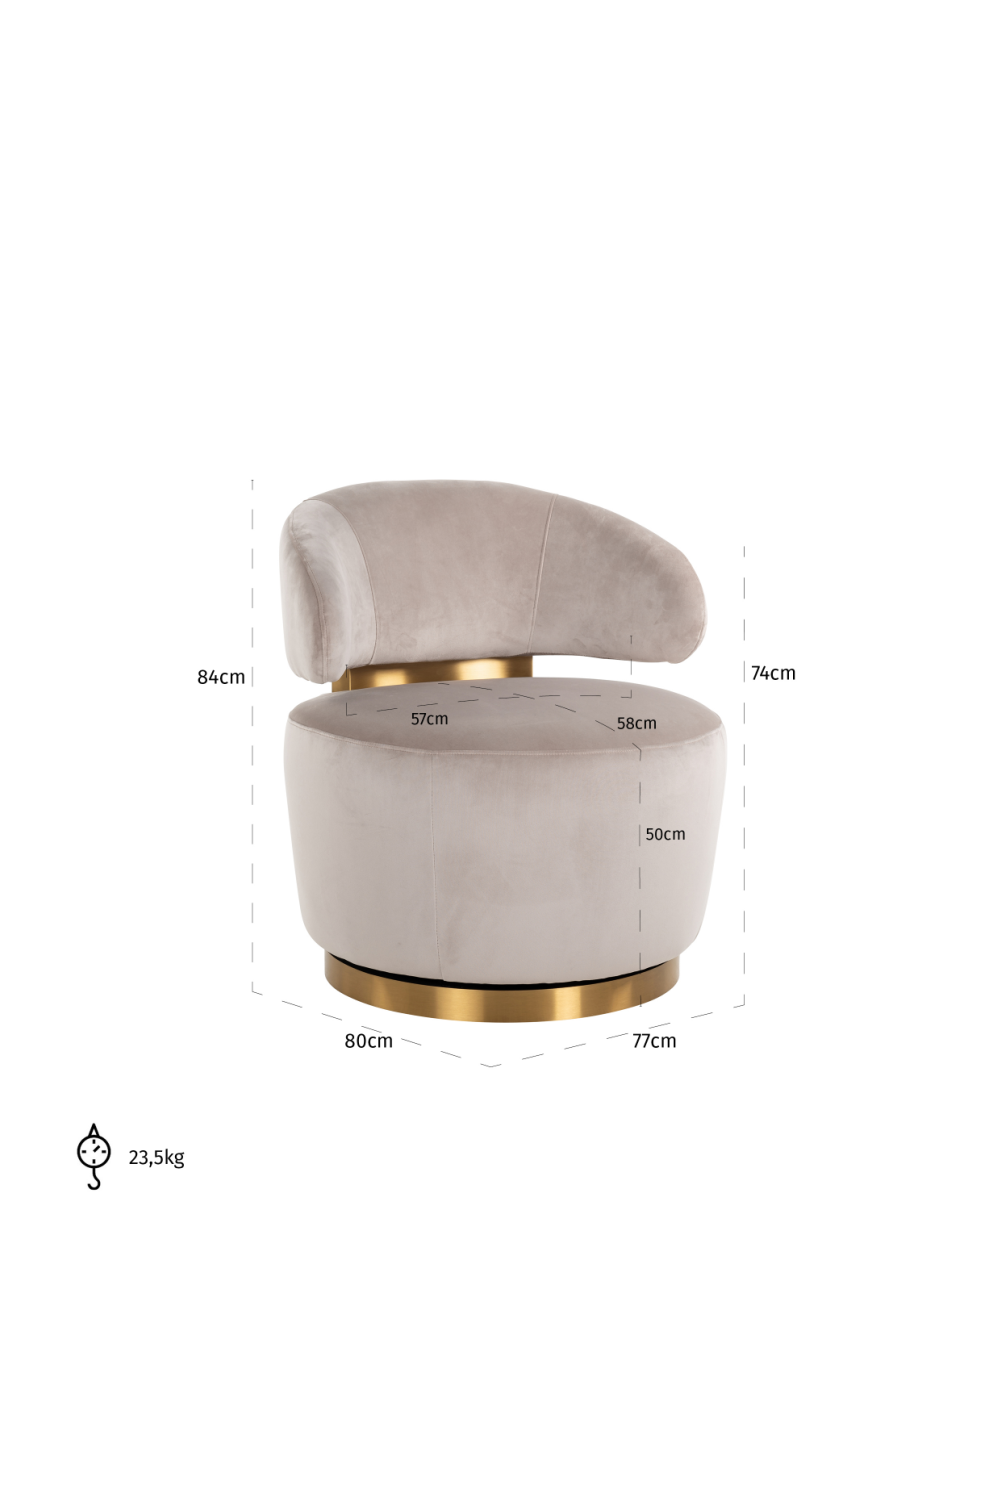 Modern Velvet Swivel Chair | OROA Maxime | Oroa.com